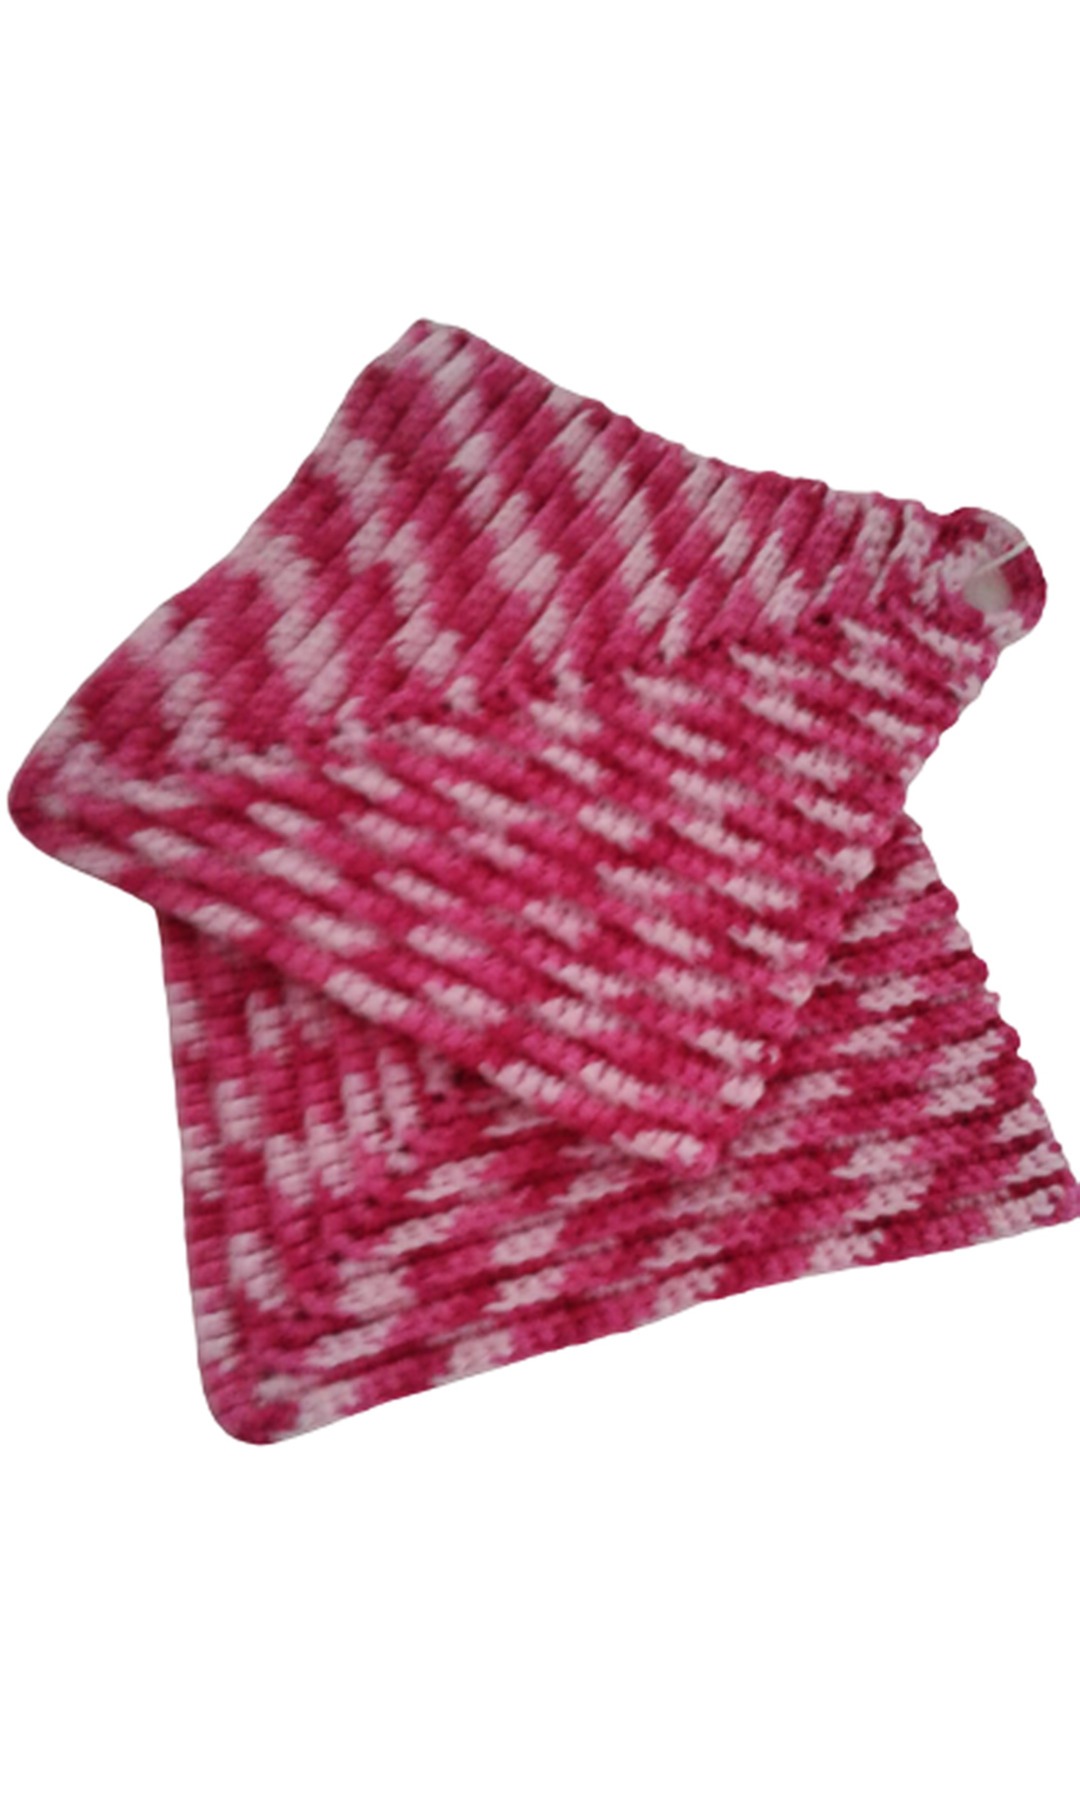 Topflappen klassicher Stil ca 19 x 19 cm - 100 Baumwolle in pink und natur 2